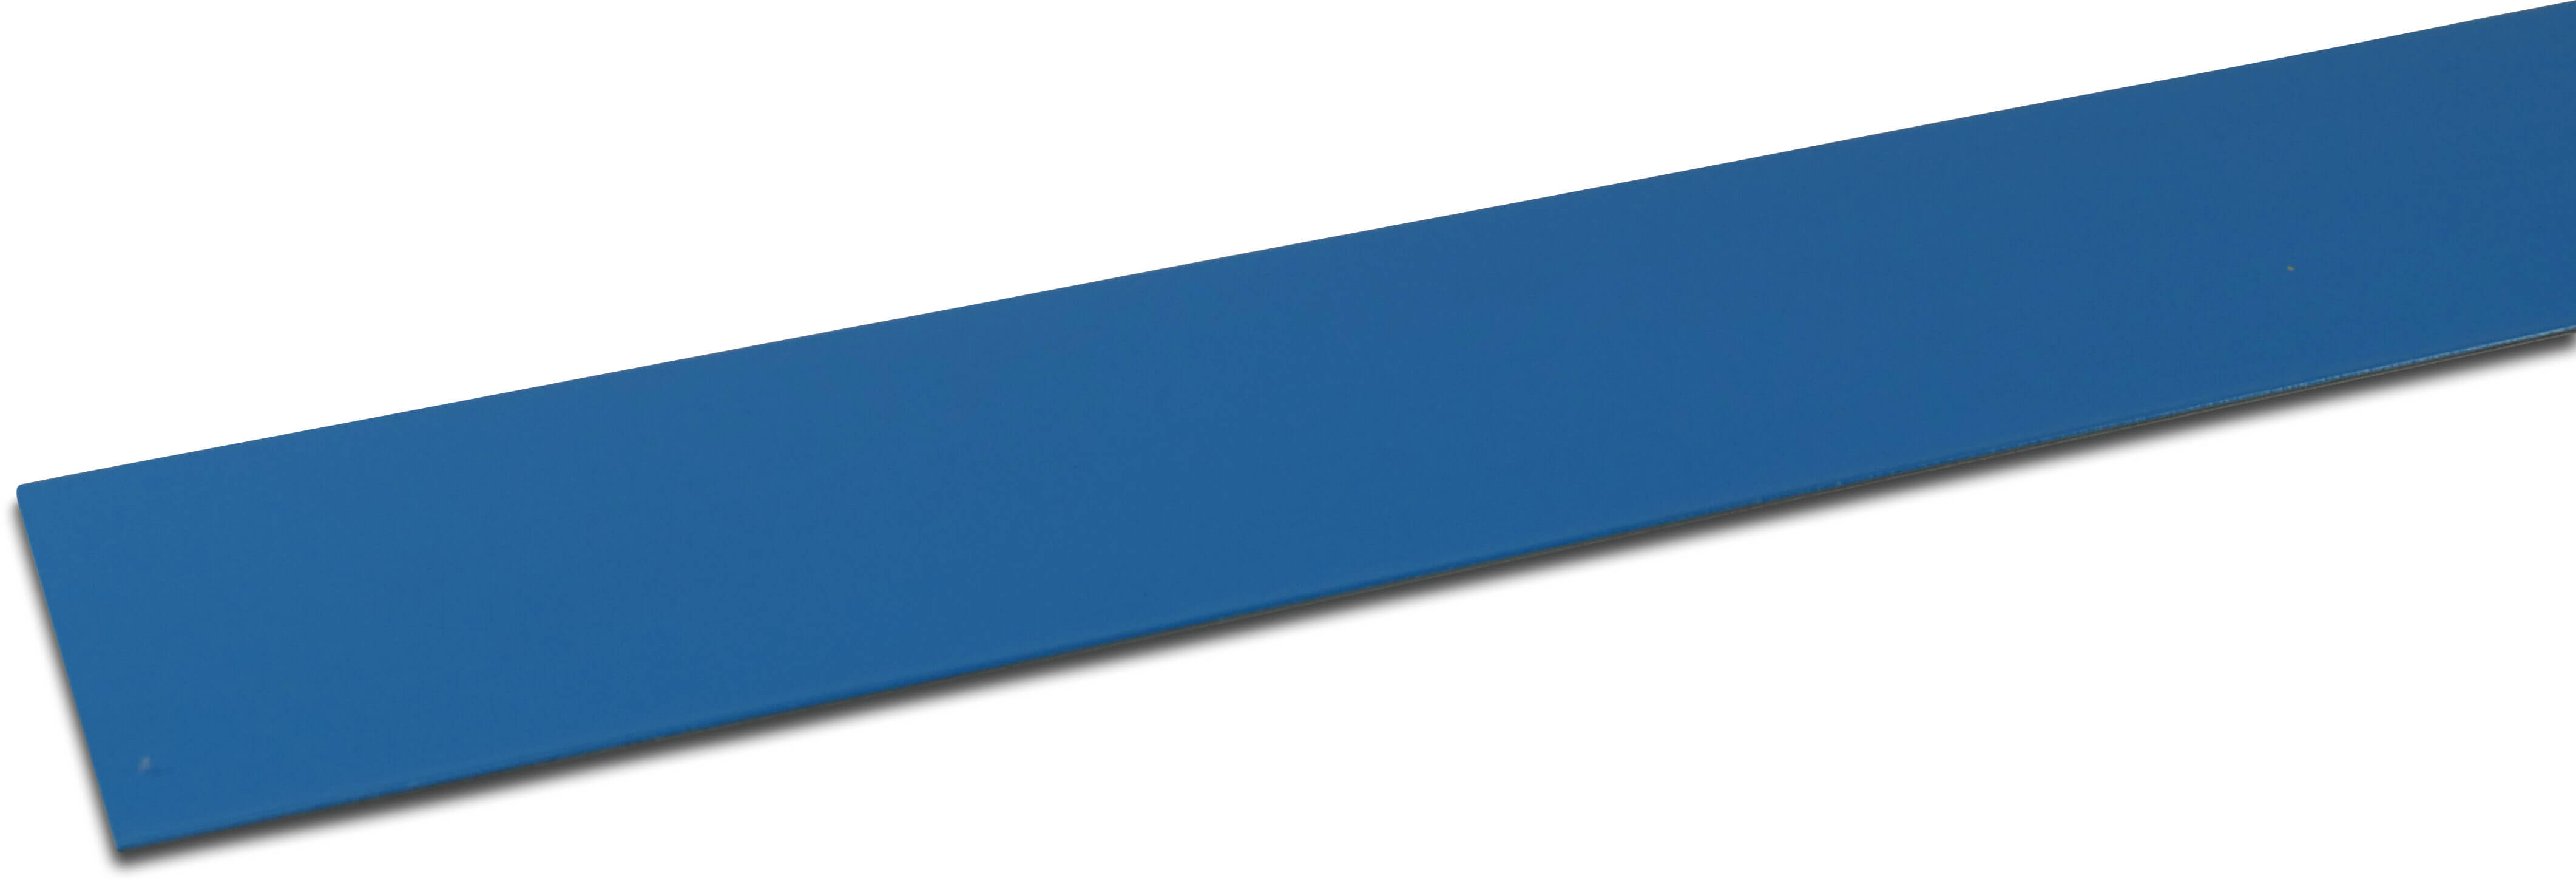 Elbe Profil PVC revêtue de métal 70 mm x 30 mm x 2000 mm bleu 2m type Angle intérieur